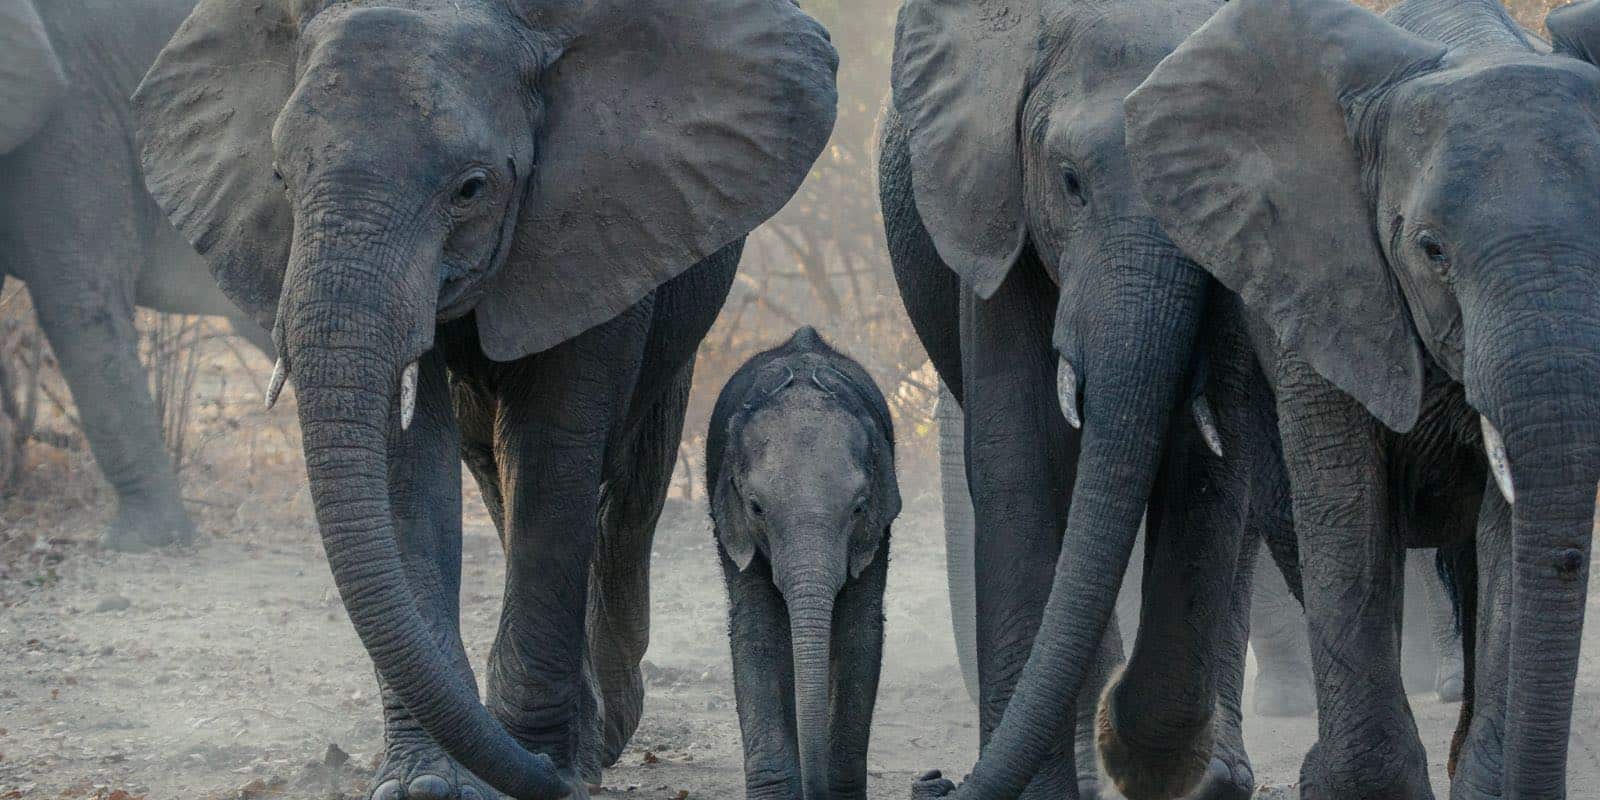 a baby elephant standing between big elephants